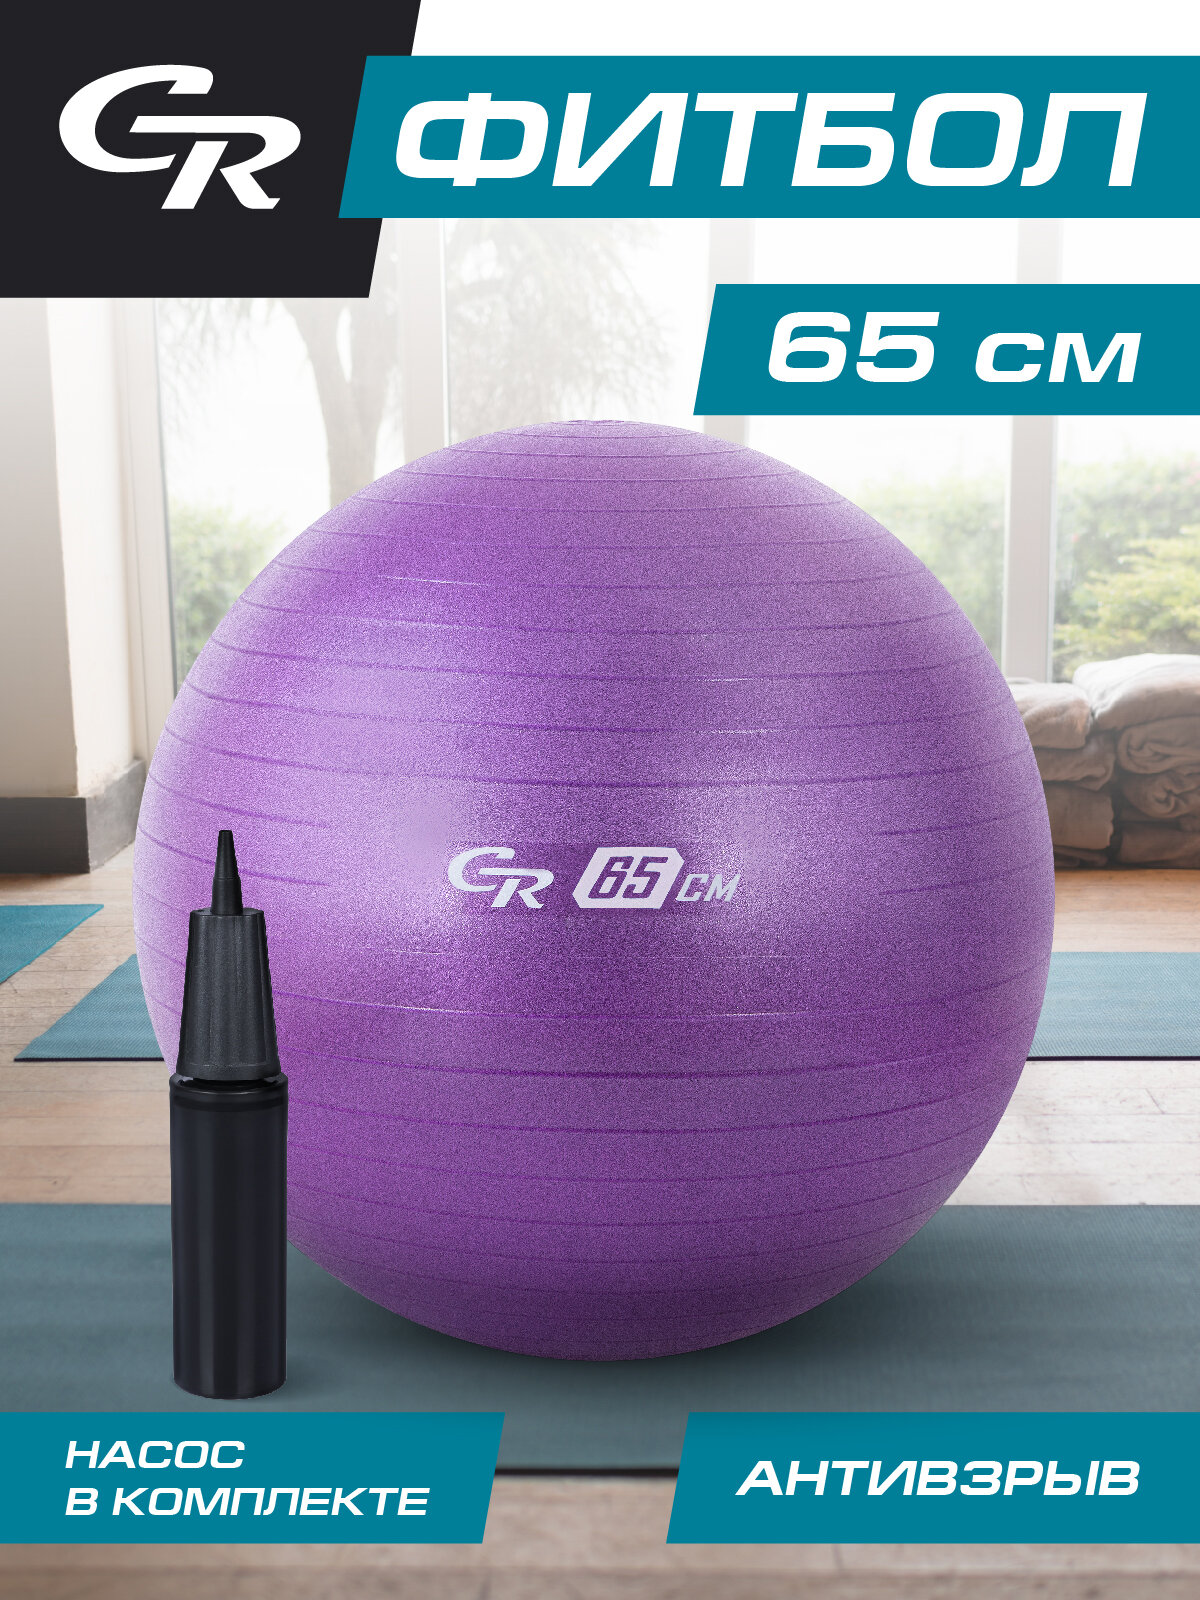 Мяч гимнастический фитбол ТМ City-Ride, для фитнеса, 65 см, 1000 г, антивзрыв, насос, цвет лавандовый